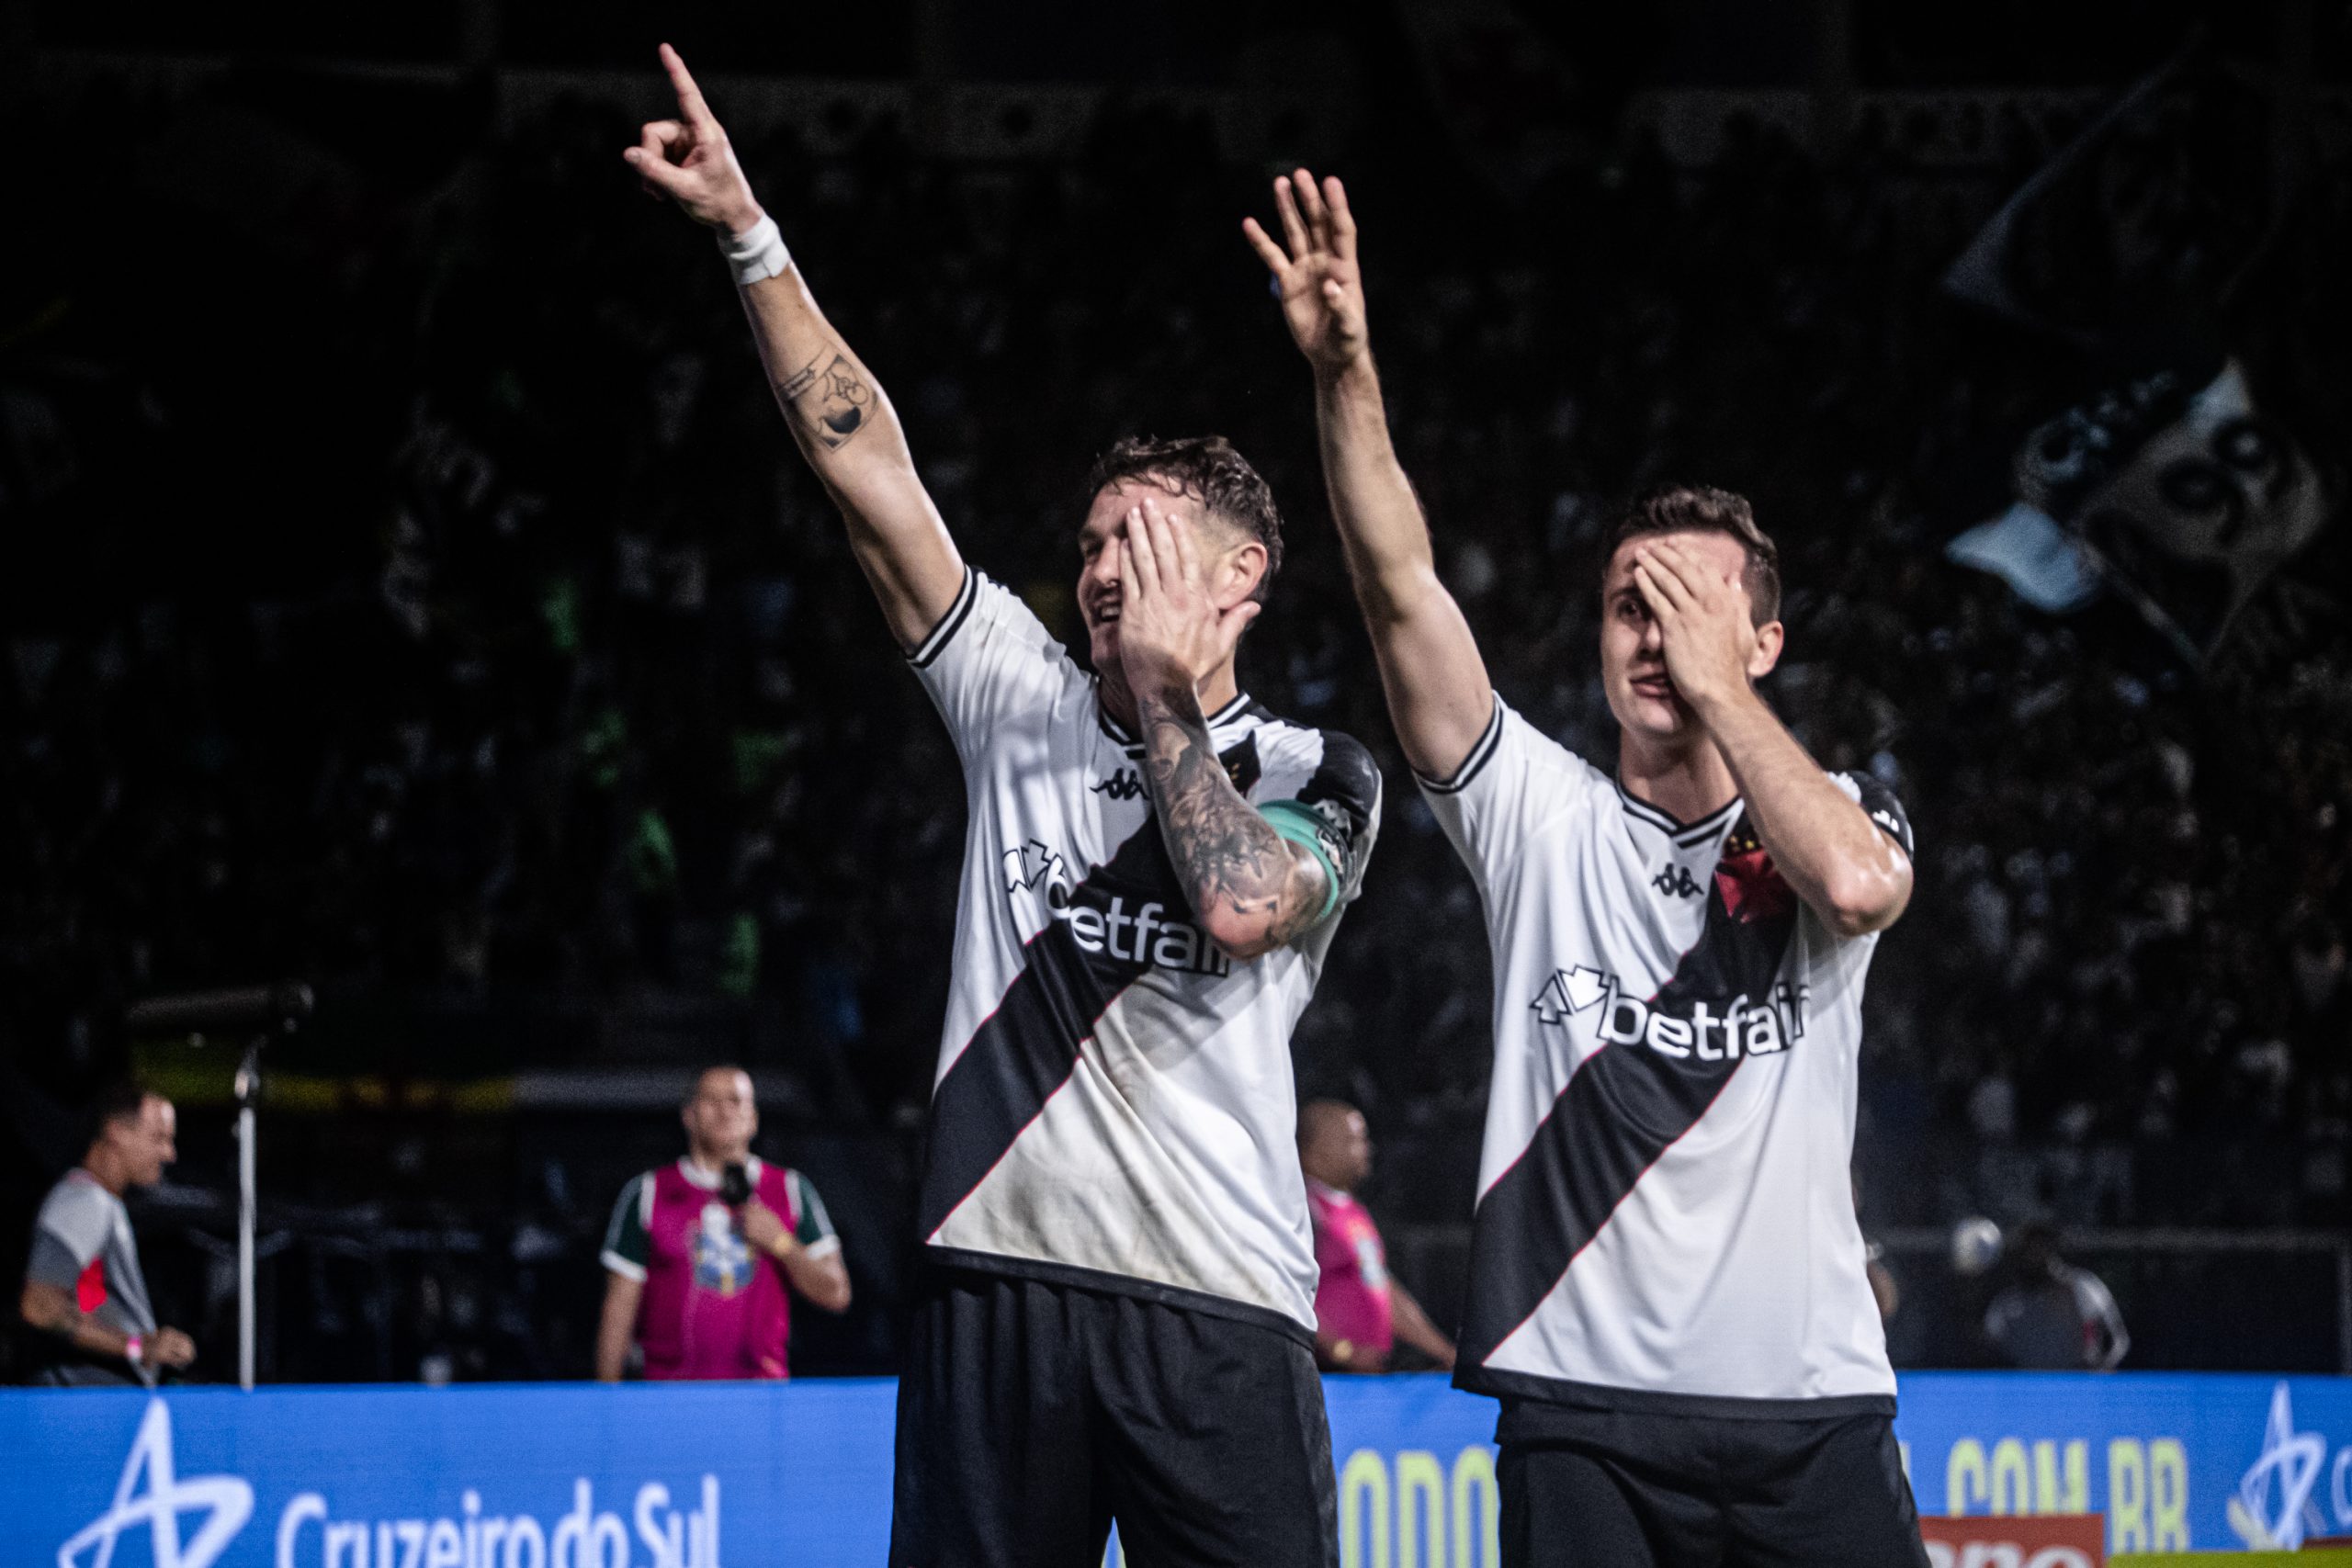 Vegetti comemora gol ao lado de Lucas Piton (Foto: Leandro Amorim/Vasco)